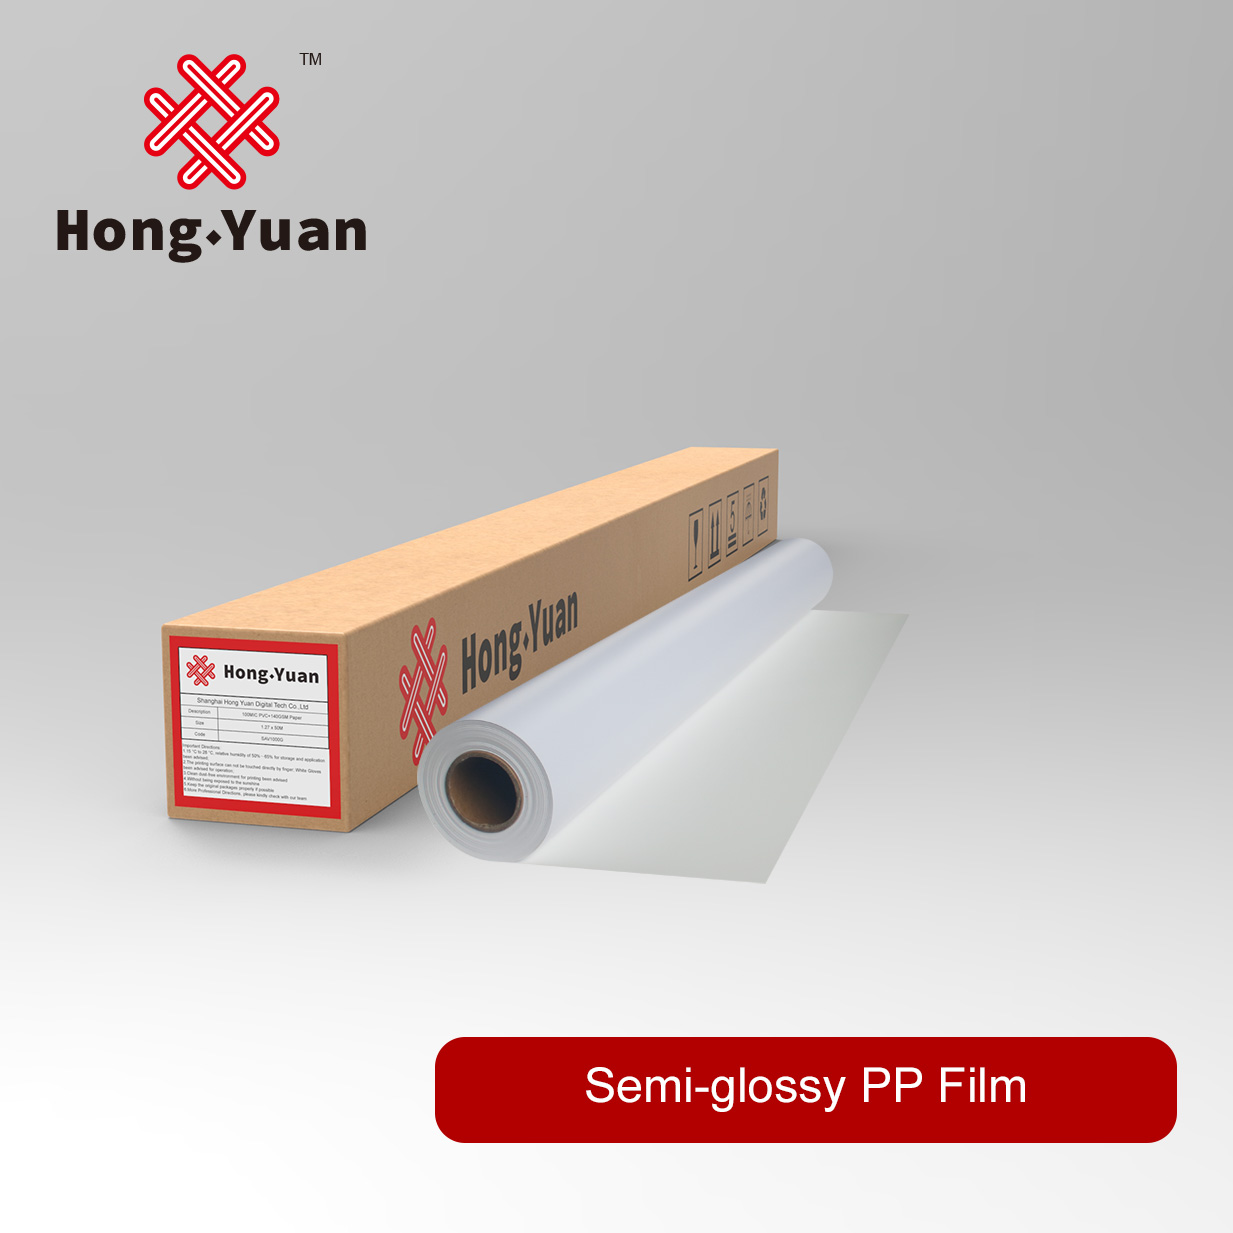 Semi-glossy PP Film DPP300S